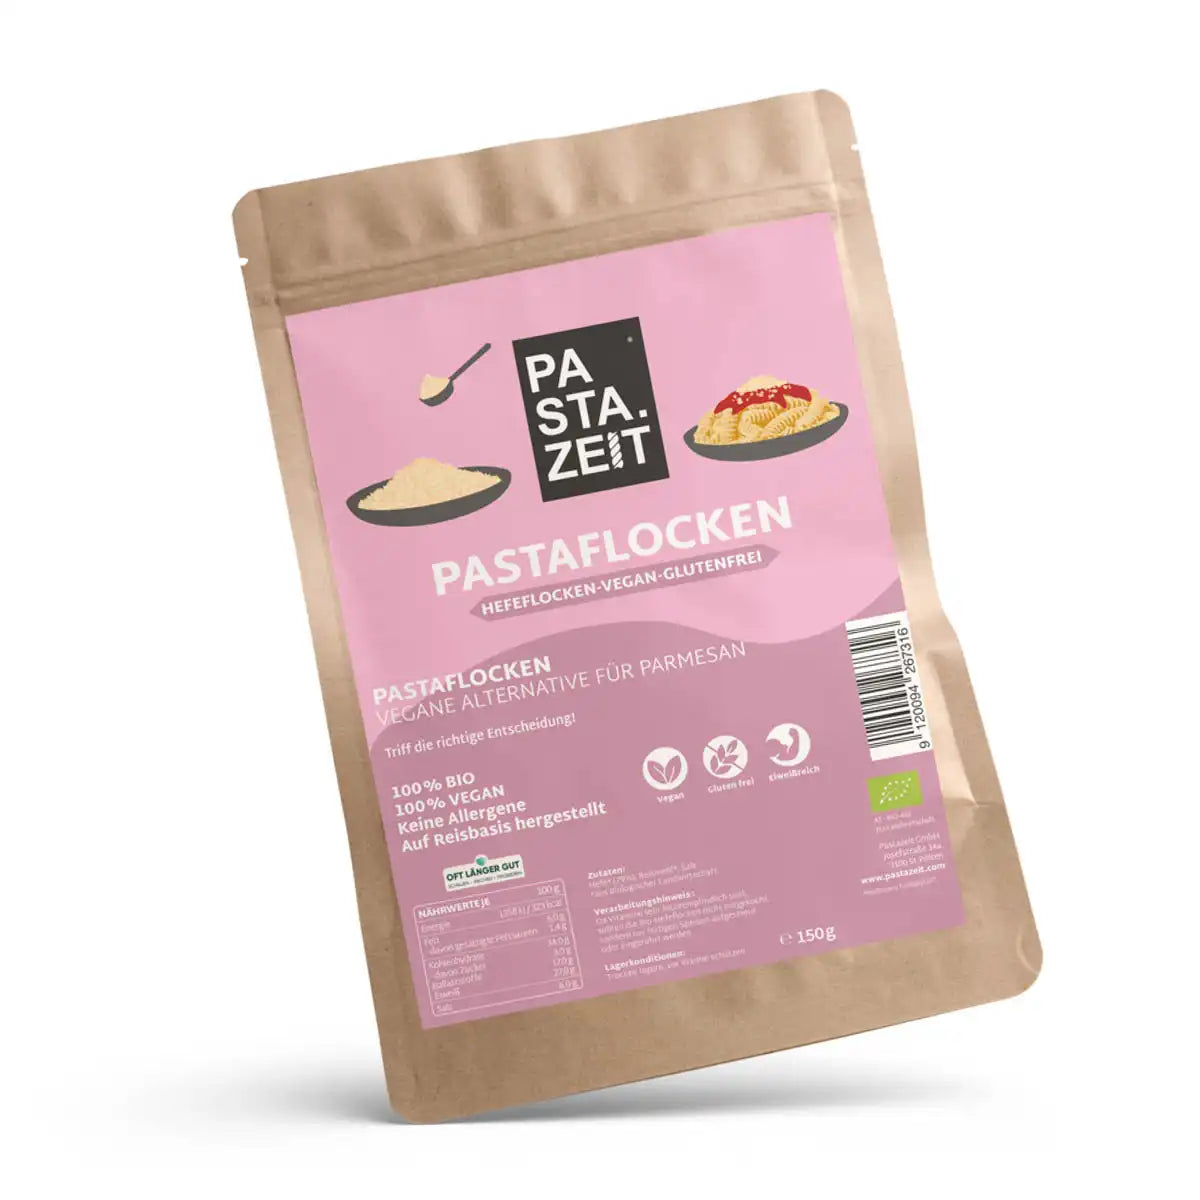 Dieses Produkt enthält 150g Vegane und Glutenfreie Hefeflocken die dem Parmesan ähneln 